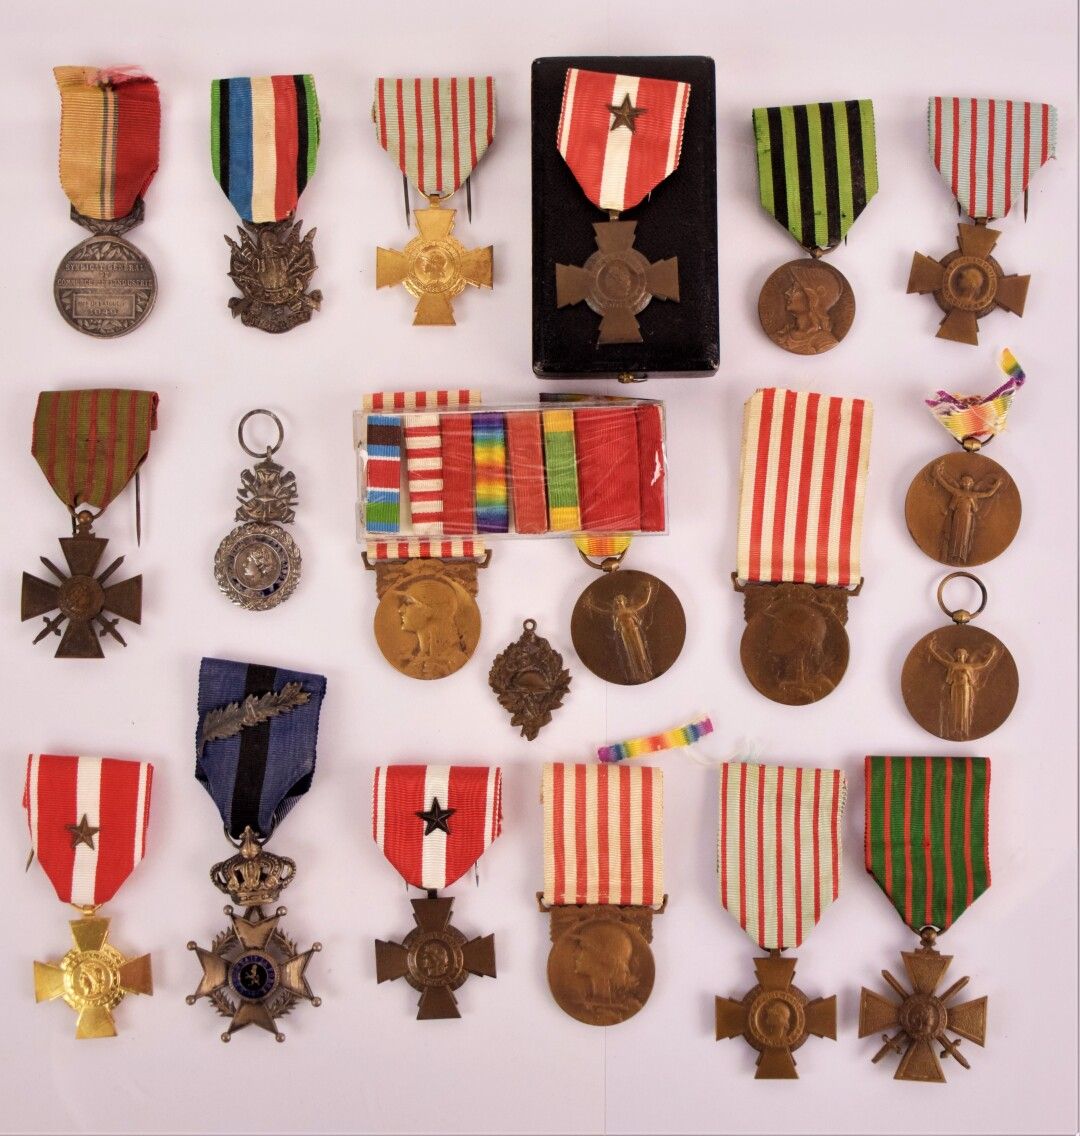 Null [MILITARIA]

Collezione di circa 19 medaglie tra cui: 

- Medaglia commemor&hellip;